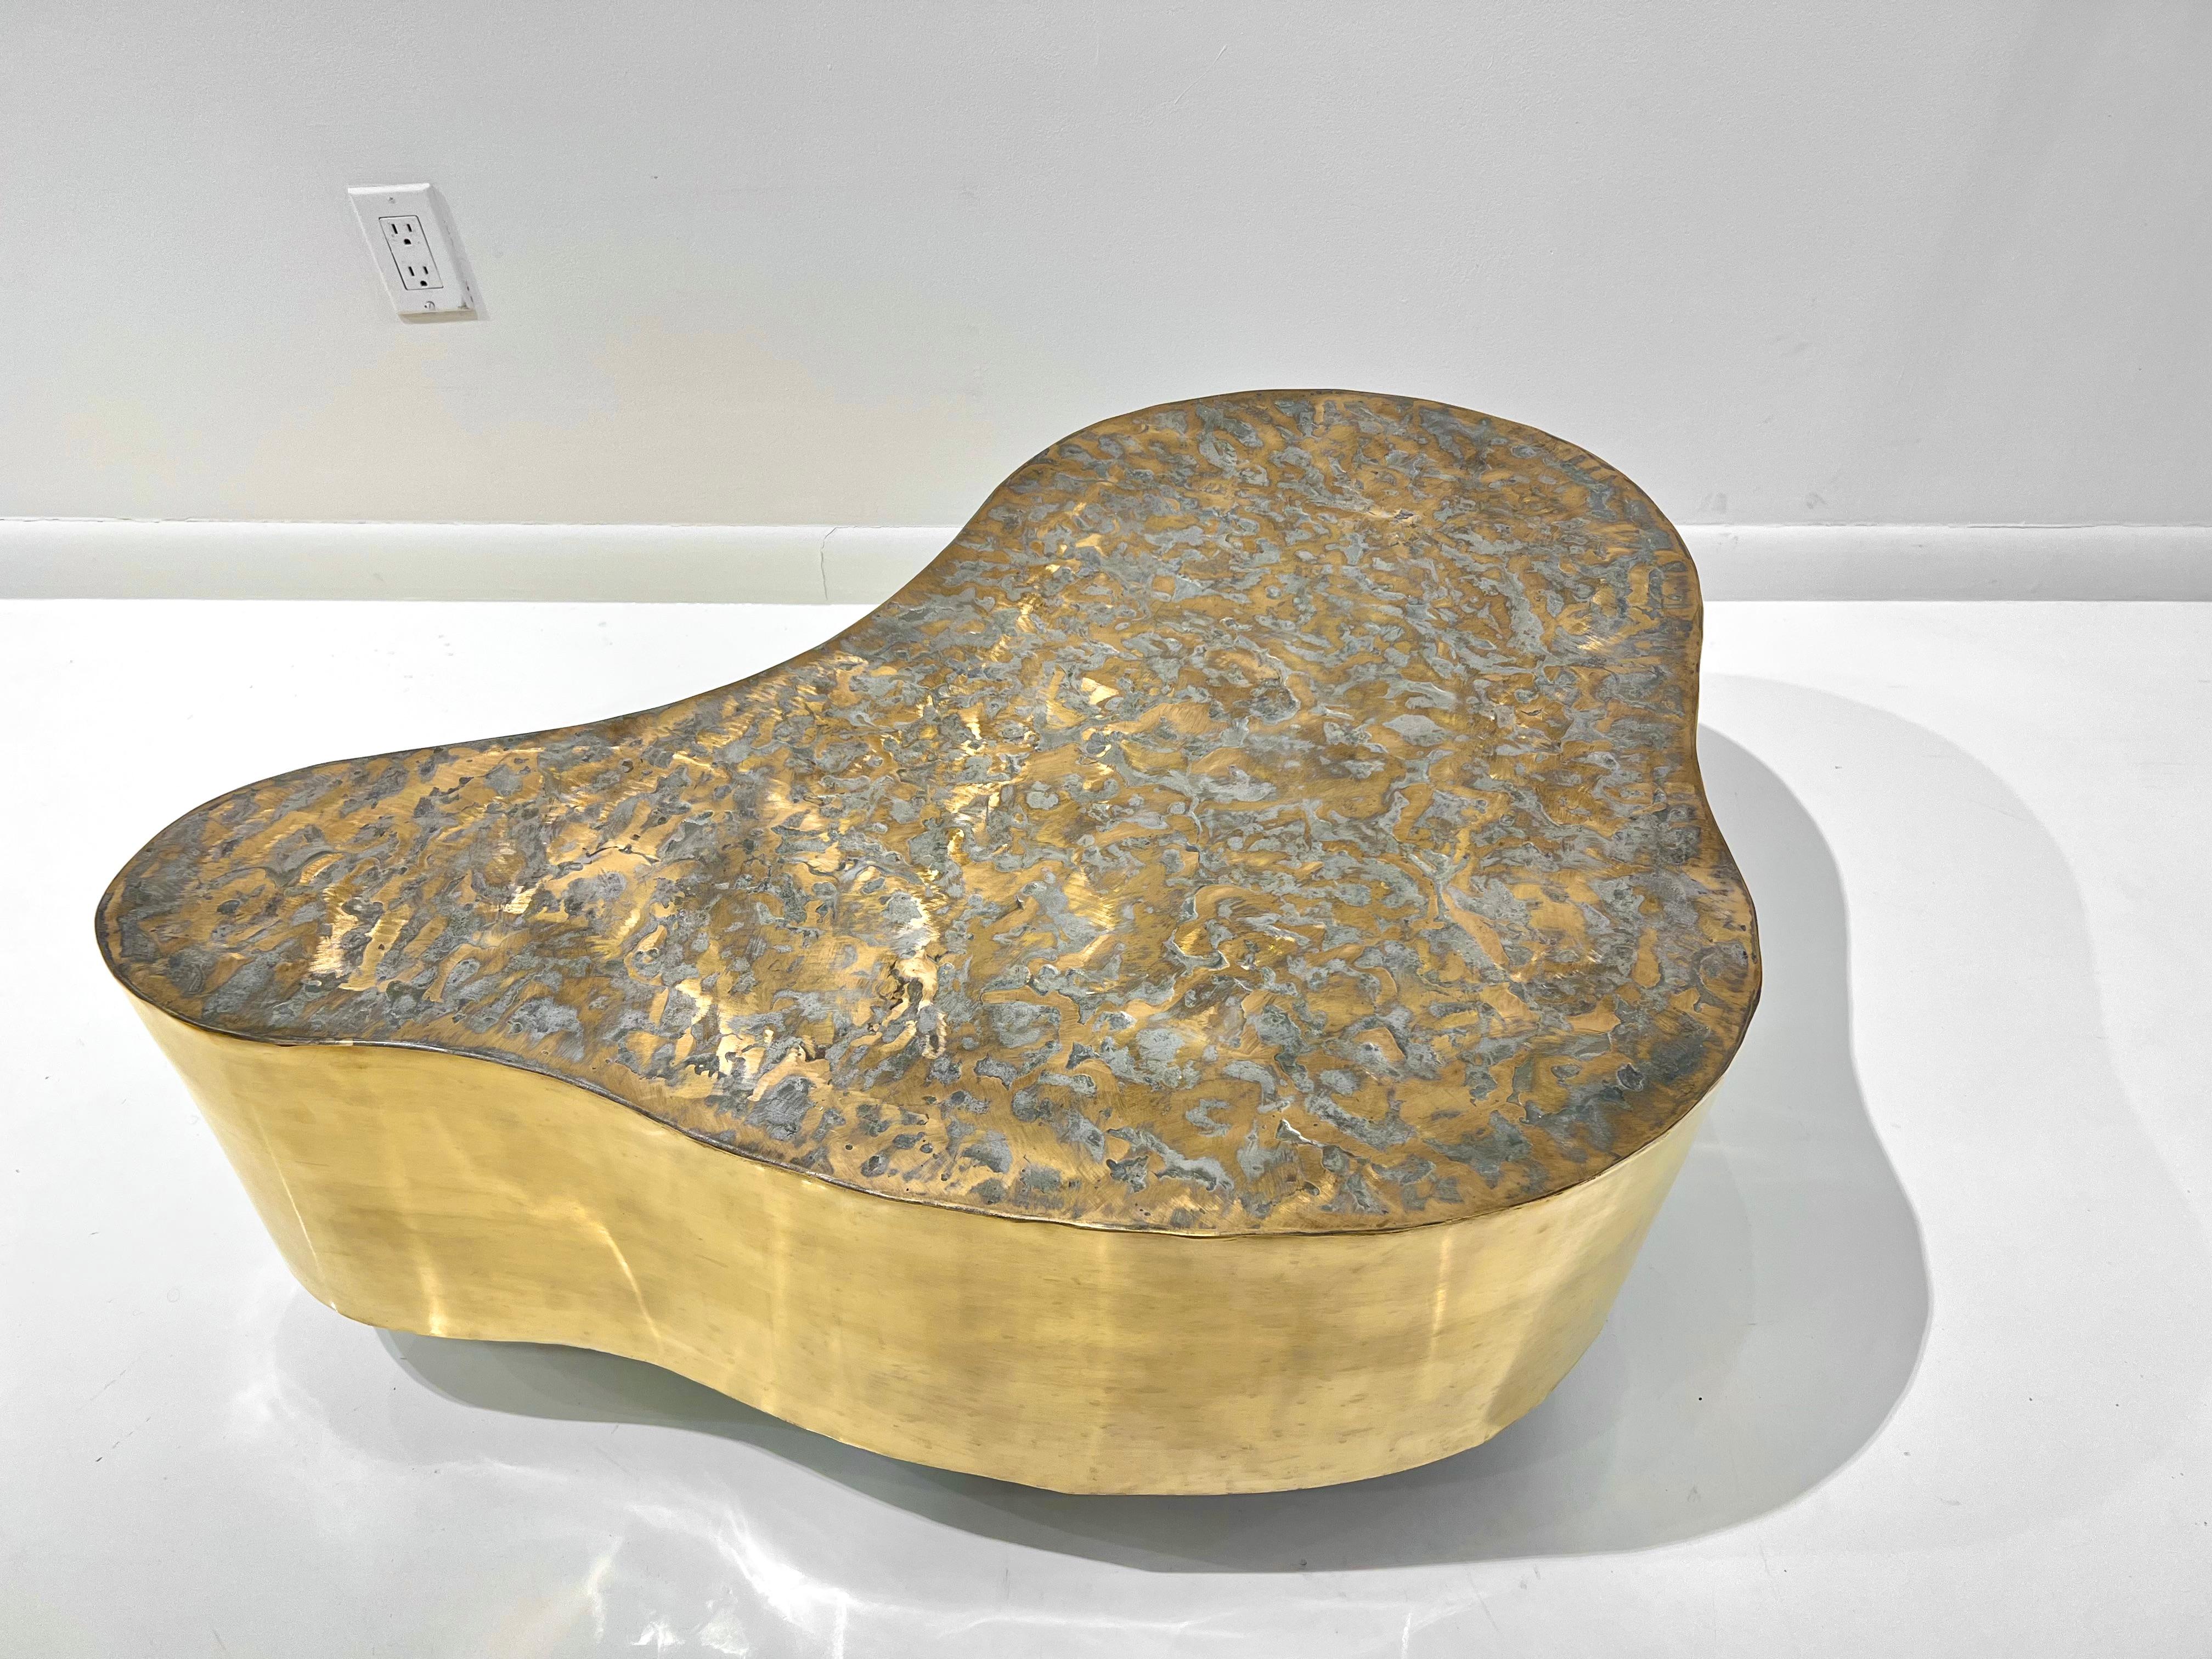 Rare table basse biomorphe en bronze des années 1960 par Silas Seandel, patinée avec un plateau texturé brossé.
Il s'agit d'une petite table unique d'un ensemble en deux parties. La table est montée sur des roulettes cachées et peut être déplacée